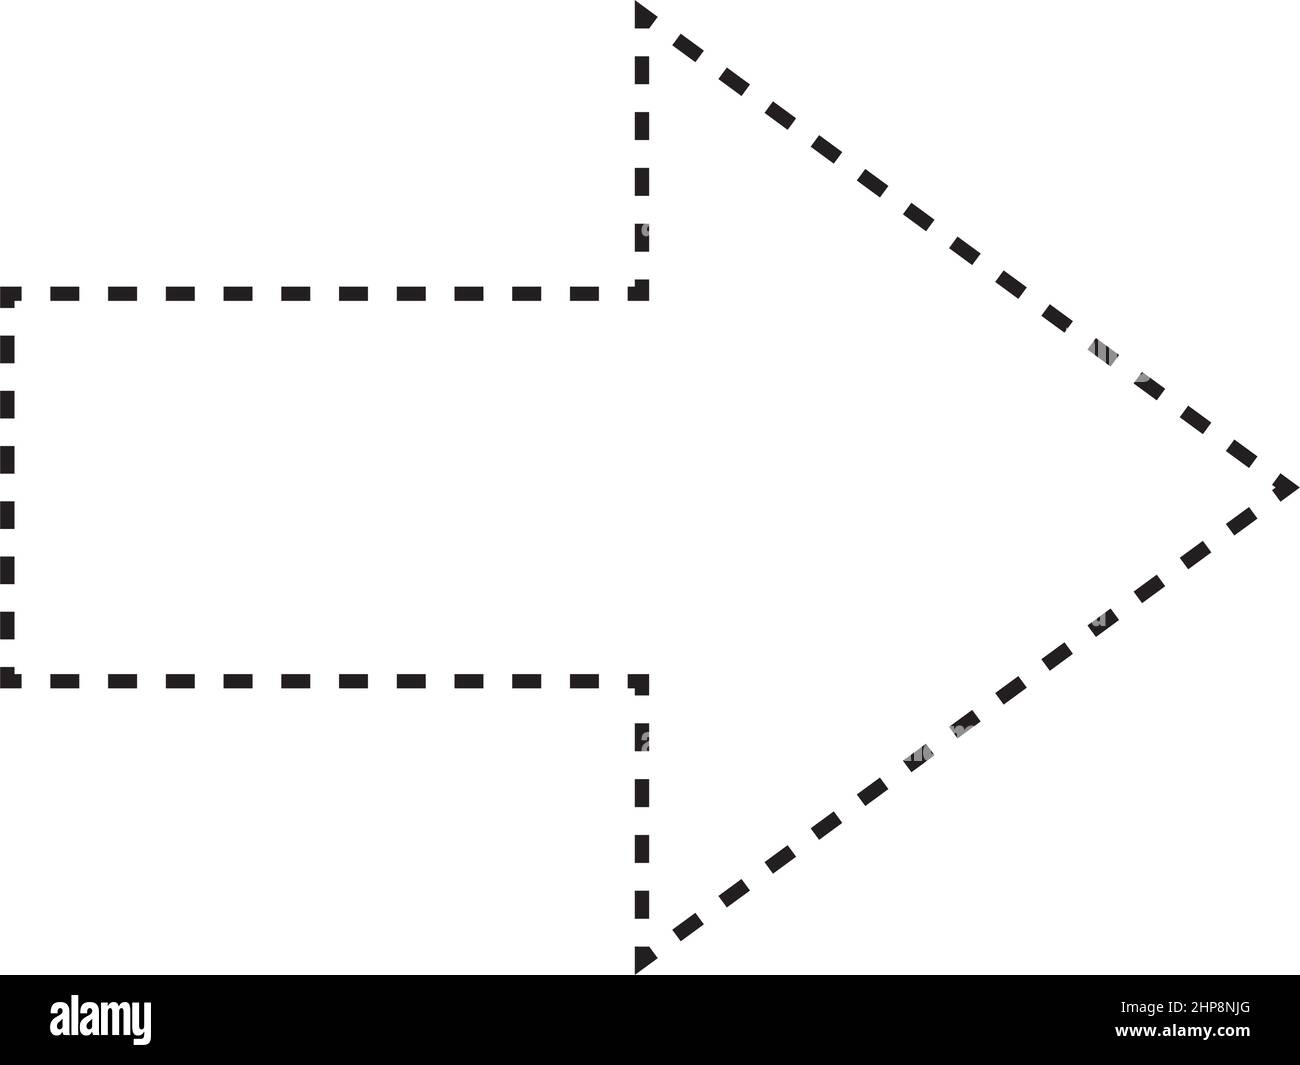 Pfeilform gestricheltes Symbol Vektor-Symbol für kreatives Grafikdesign ui-Element in einer Piktogramm-Illustration Stock Vektor